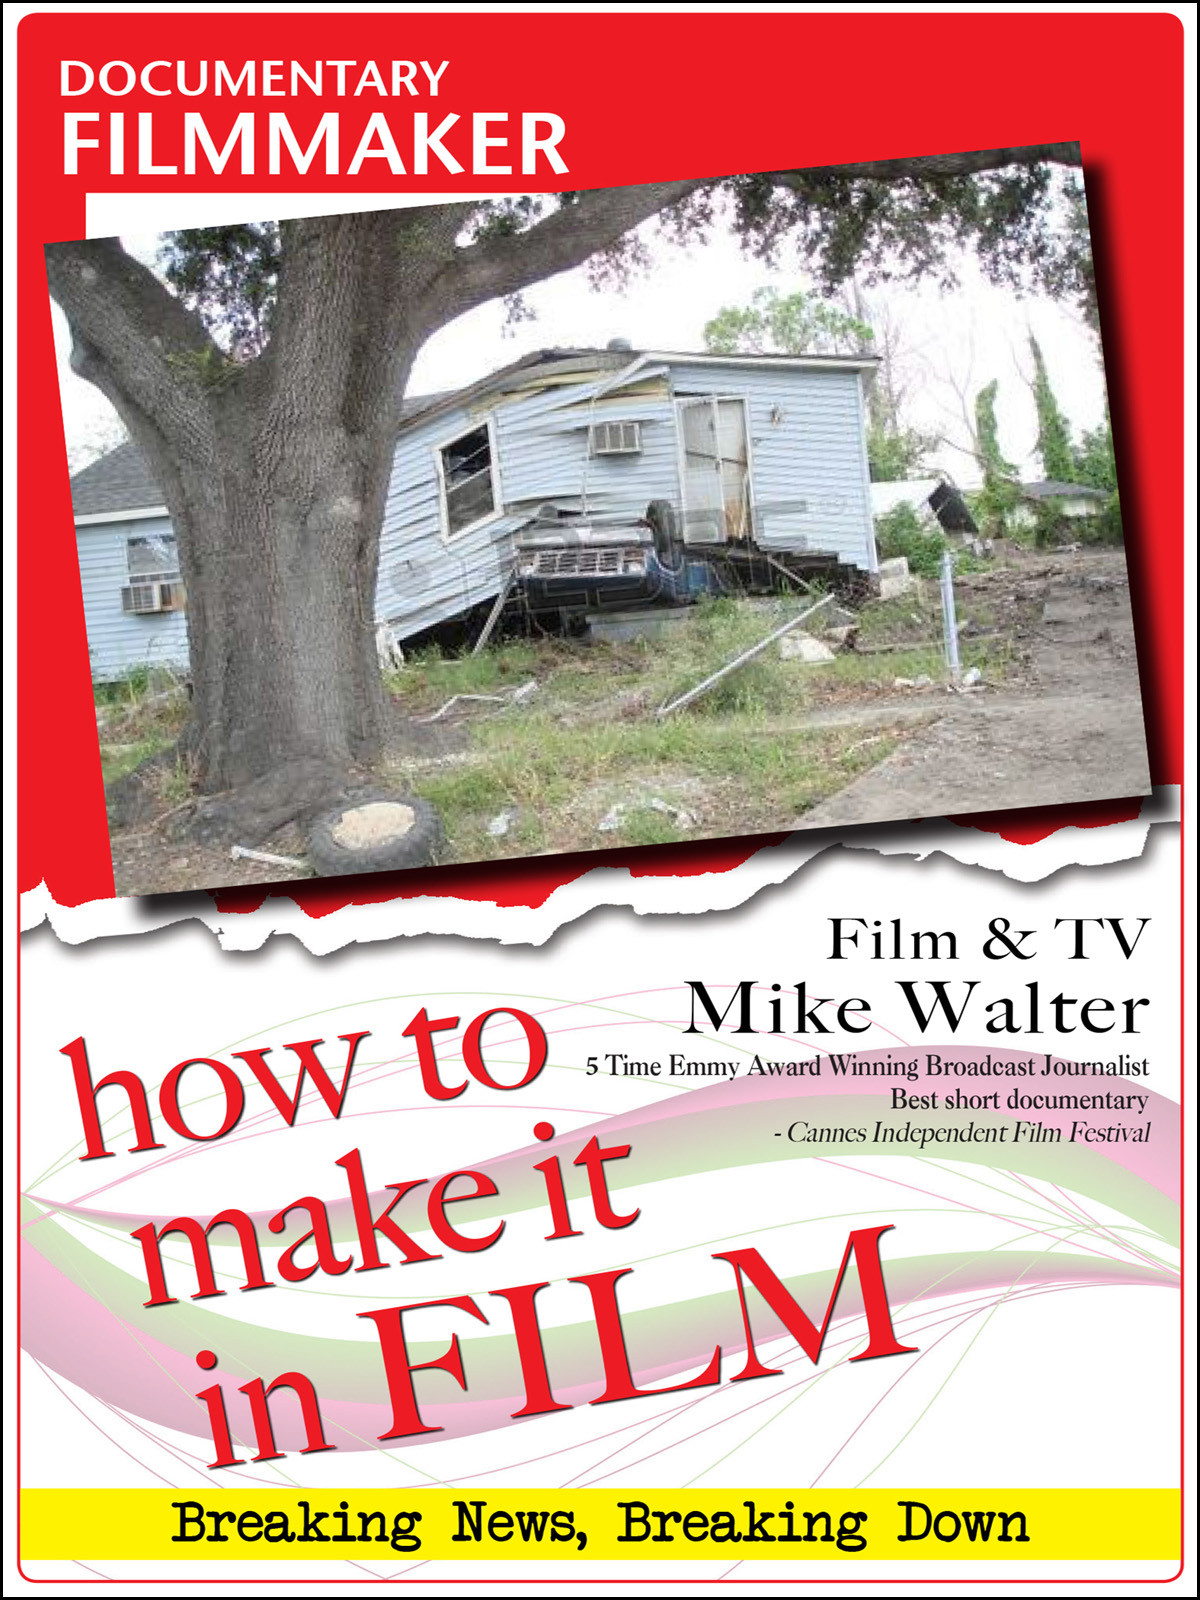 F2870 - Documentary Filmmaker Film & TV Mike Walter